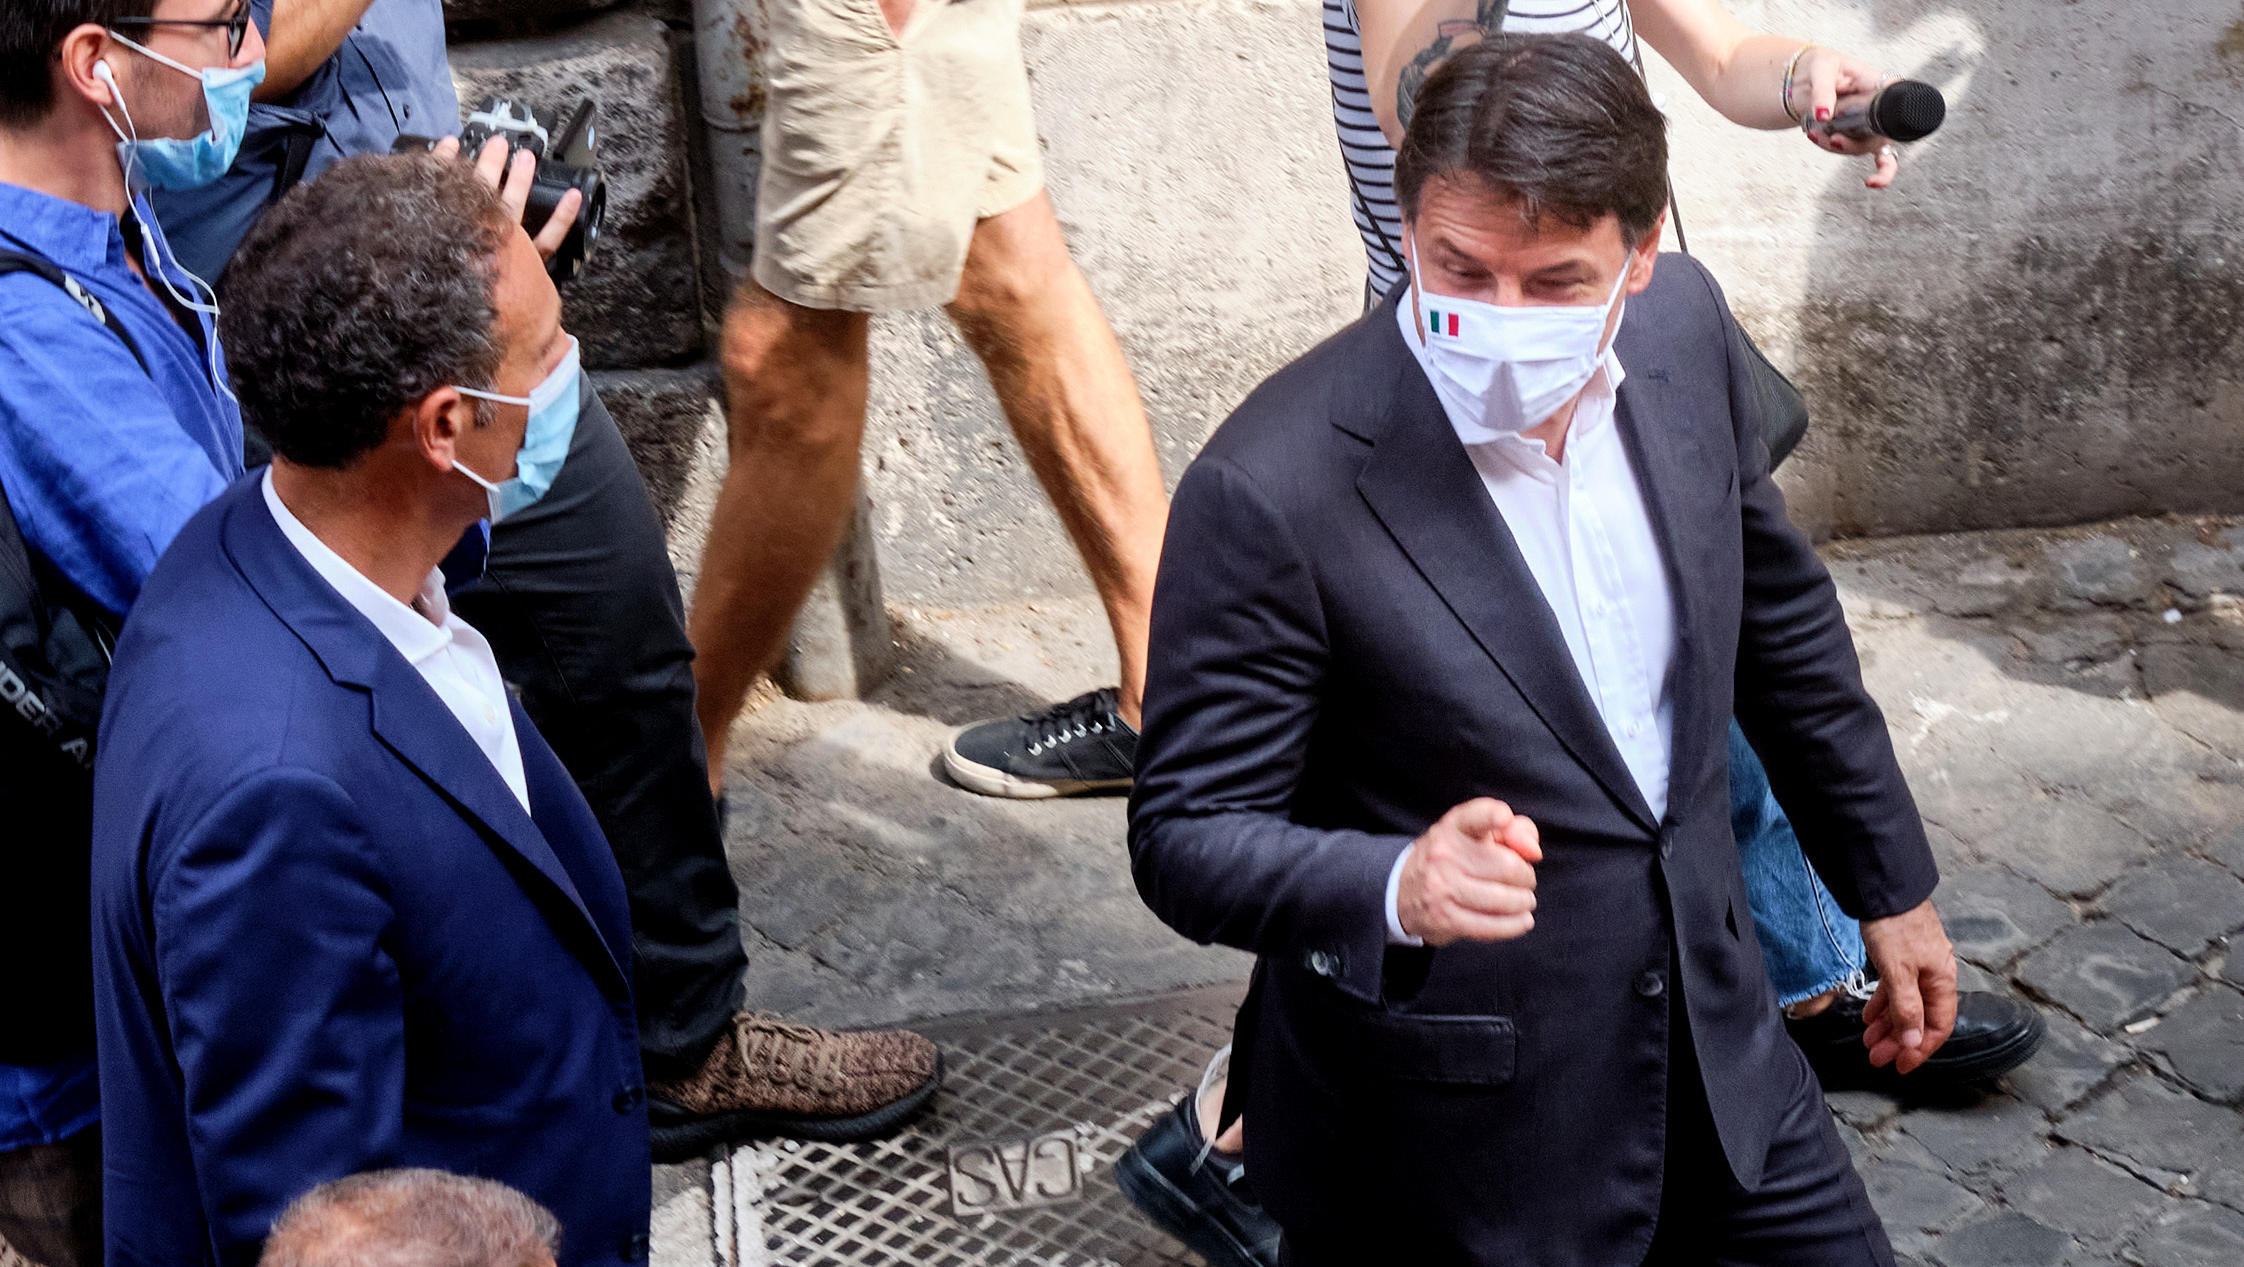 Italiener verpassen ihren Politikern eine schallende Ohrfeige